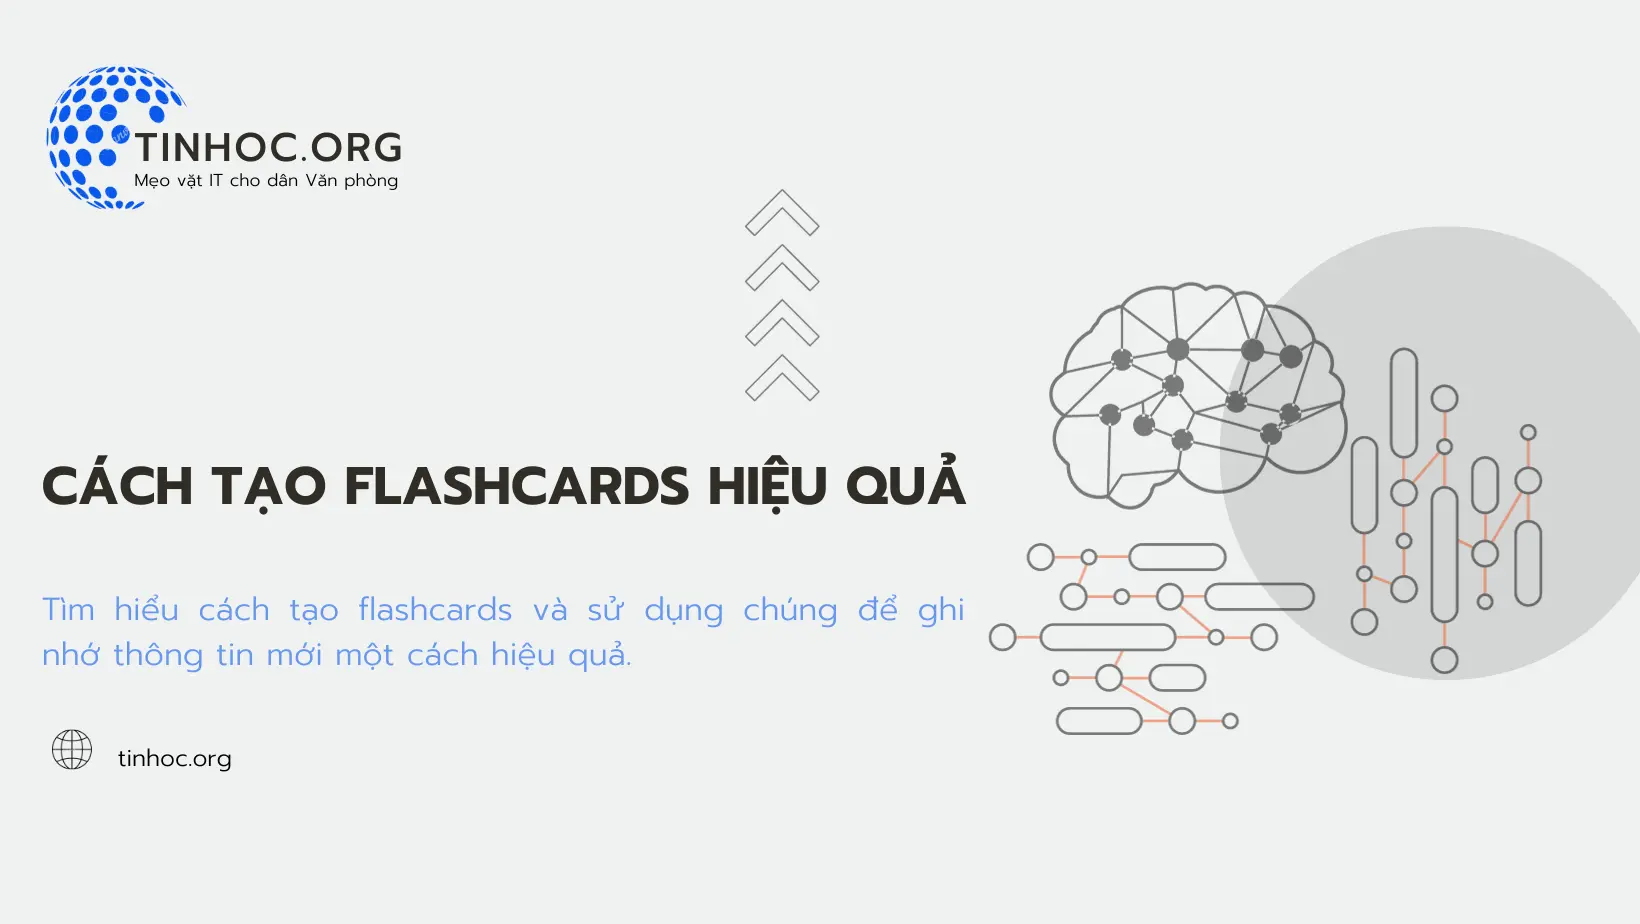 Tìm hiểu cách tạo flashcards, một công cụ học tập tuyệt vời có thể giúp bạn ghi nhớ thông tin mới một cách hiệu quả.